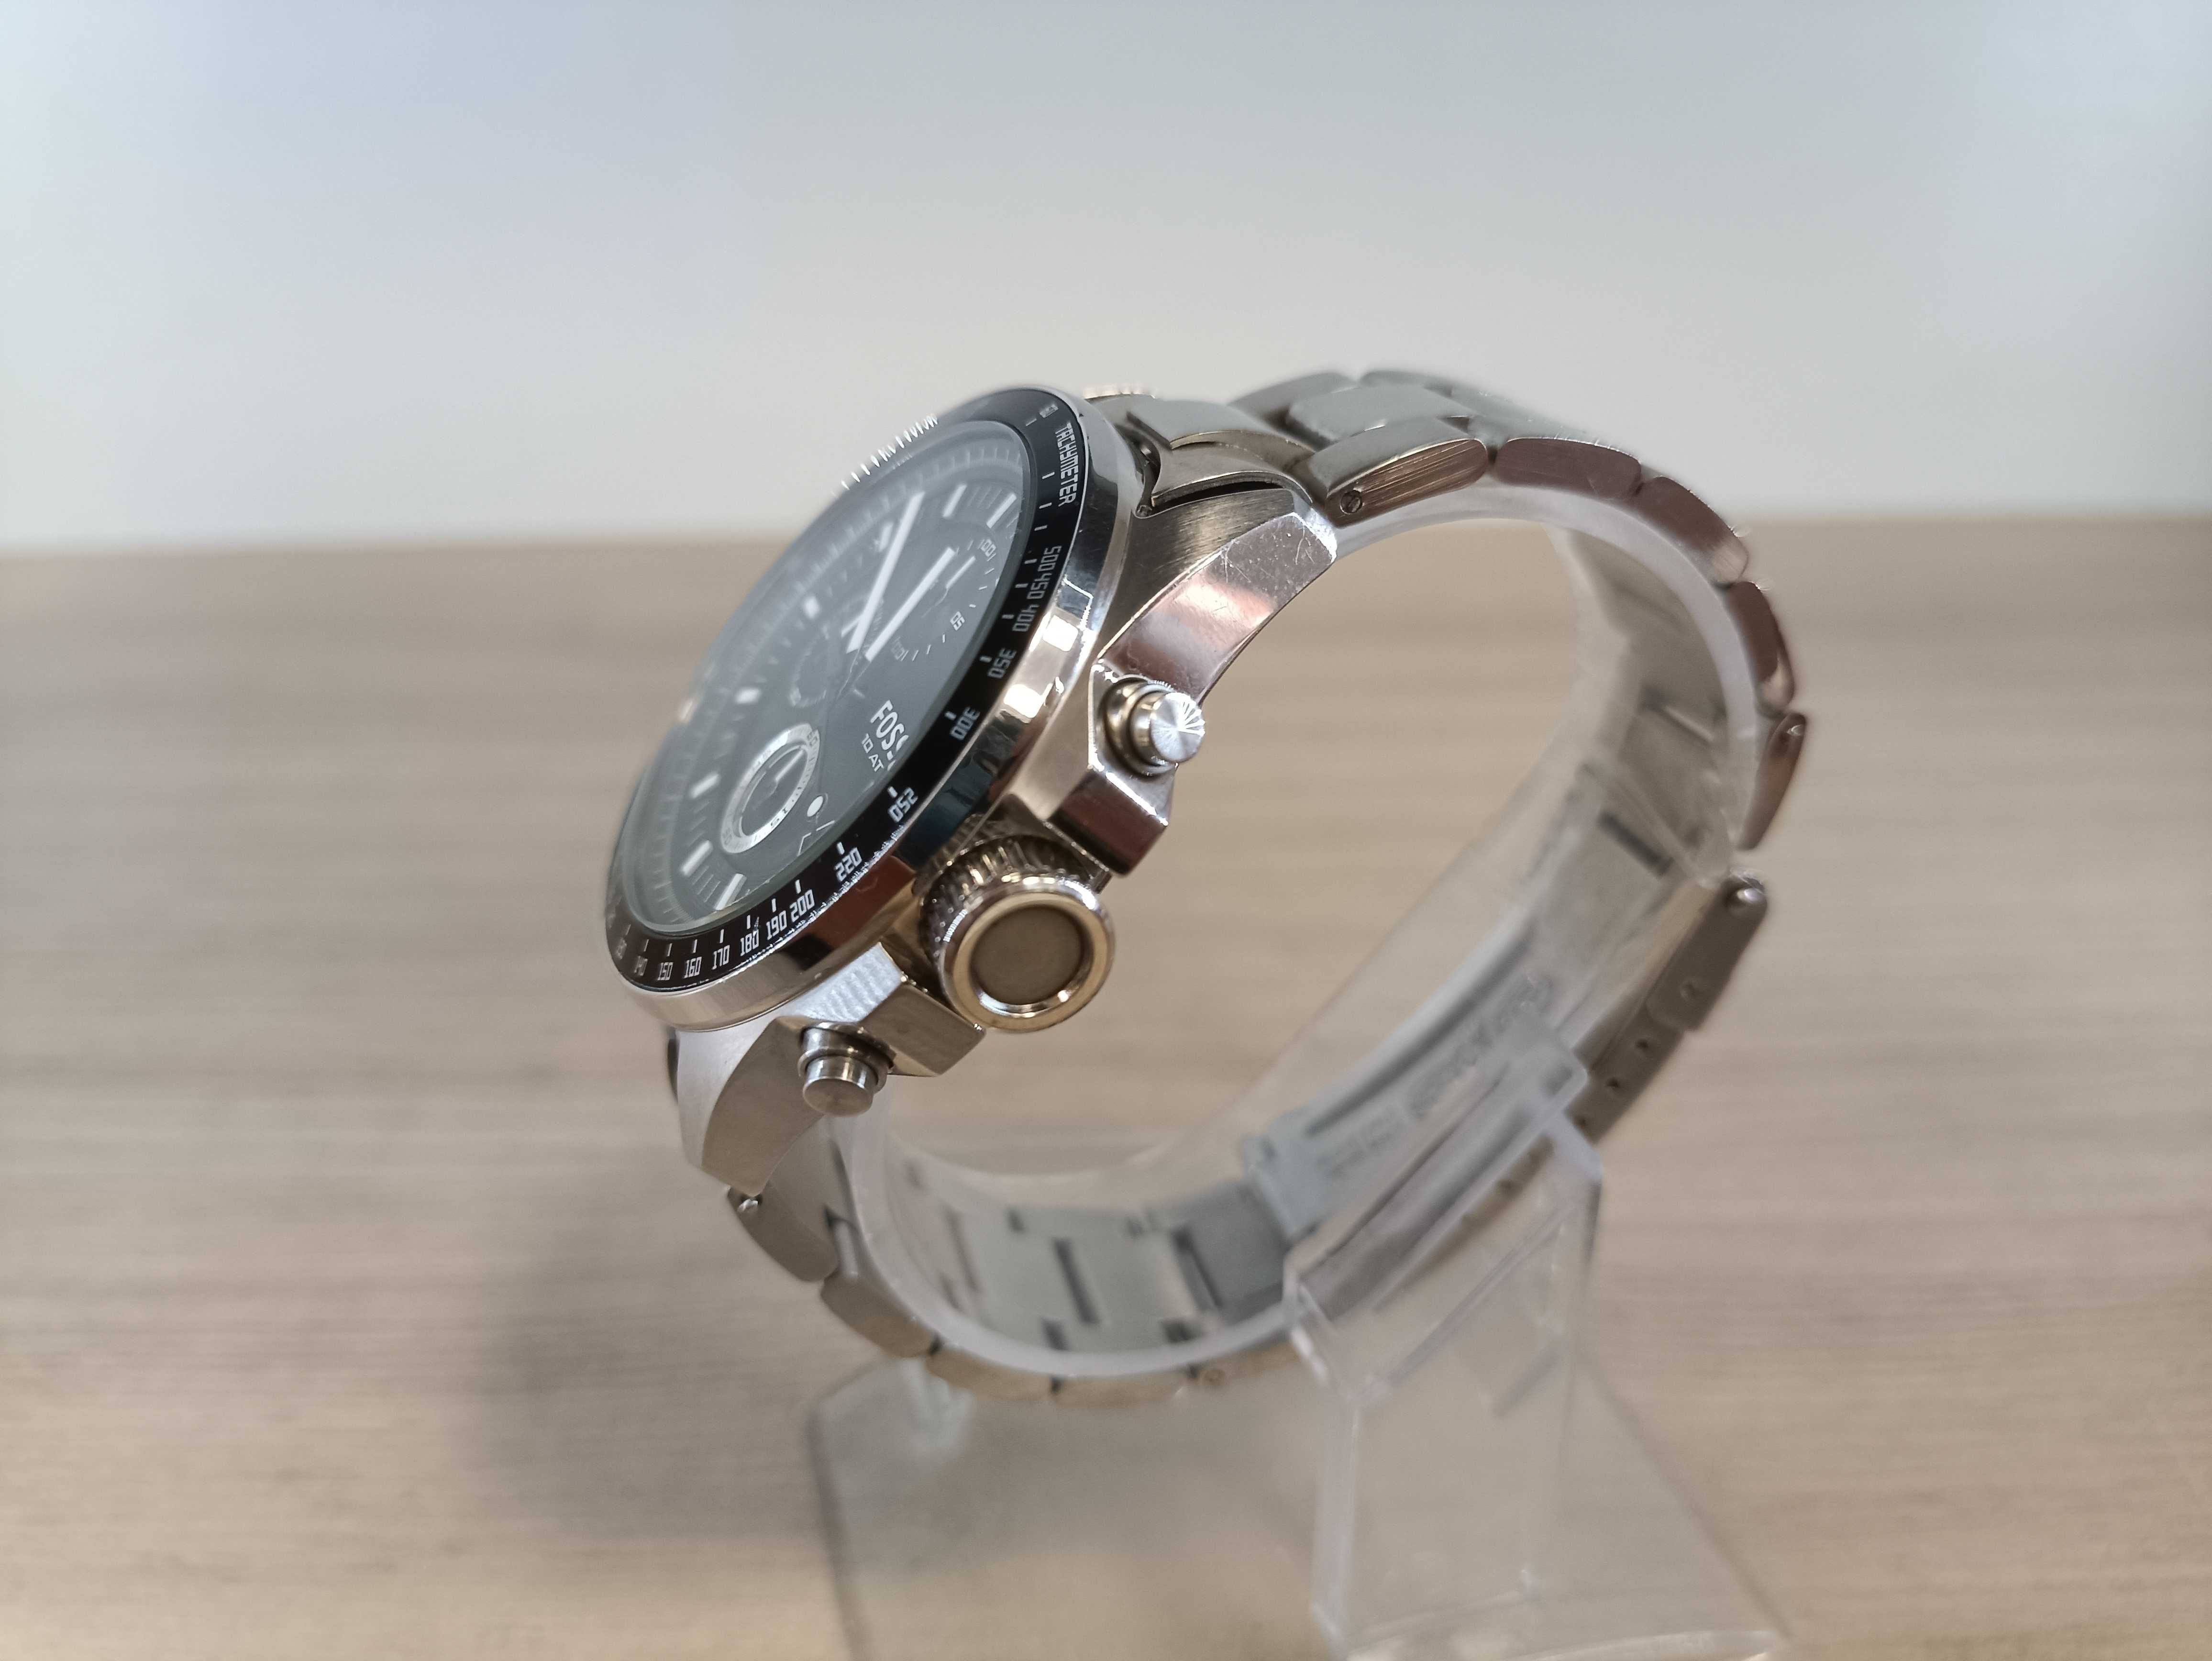 Zegarek męski naręczny Fossil CH2573 bransoleta 2x pasek 10ATM |OPIS|